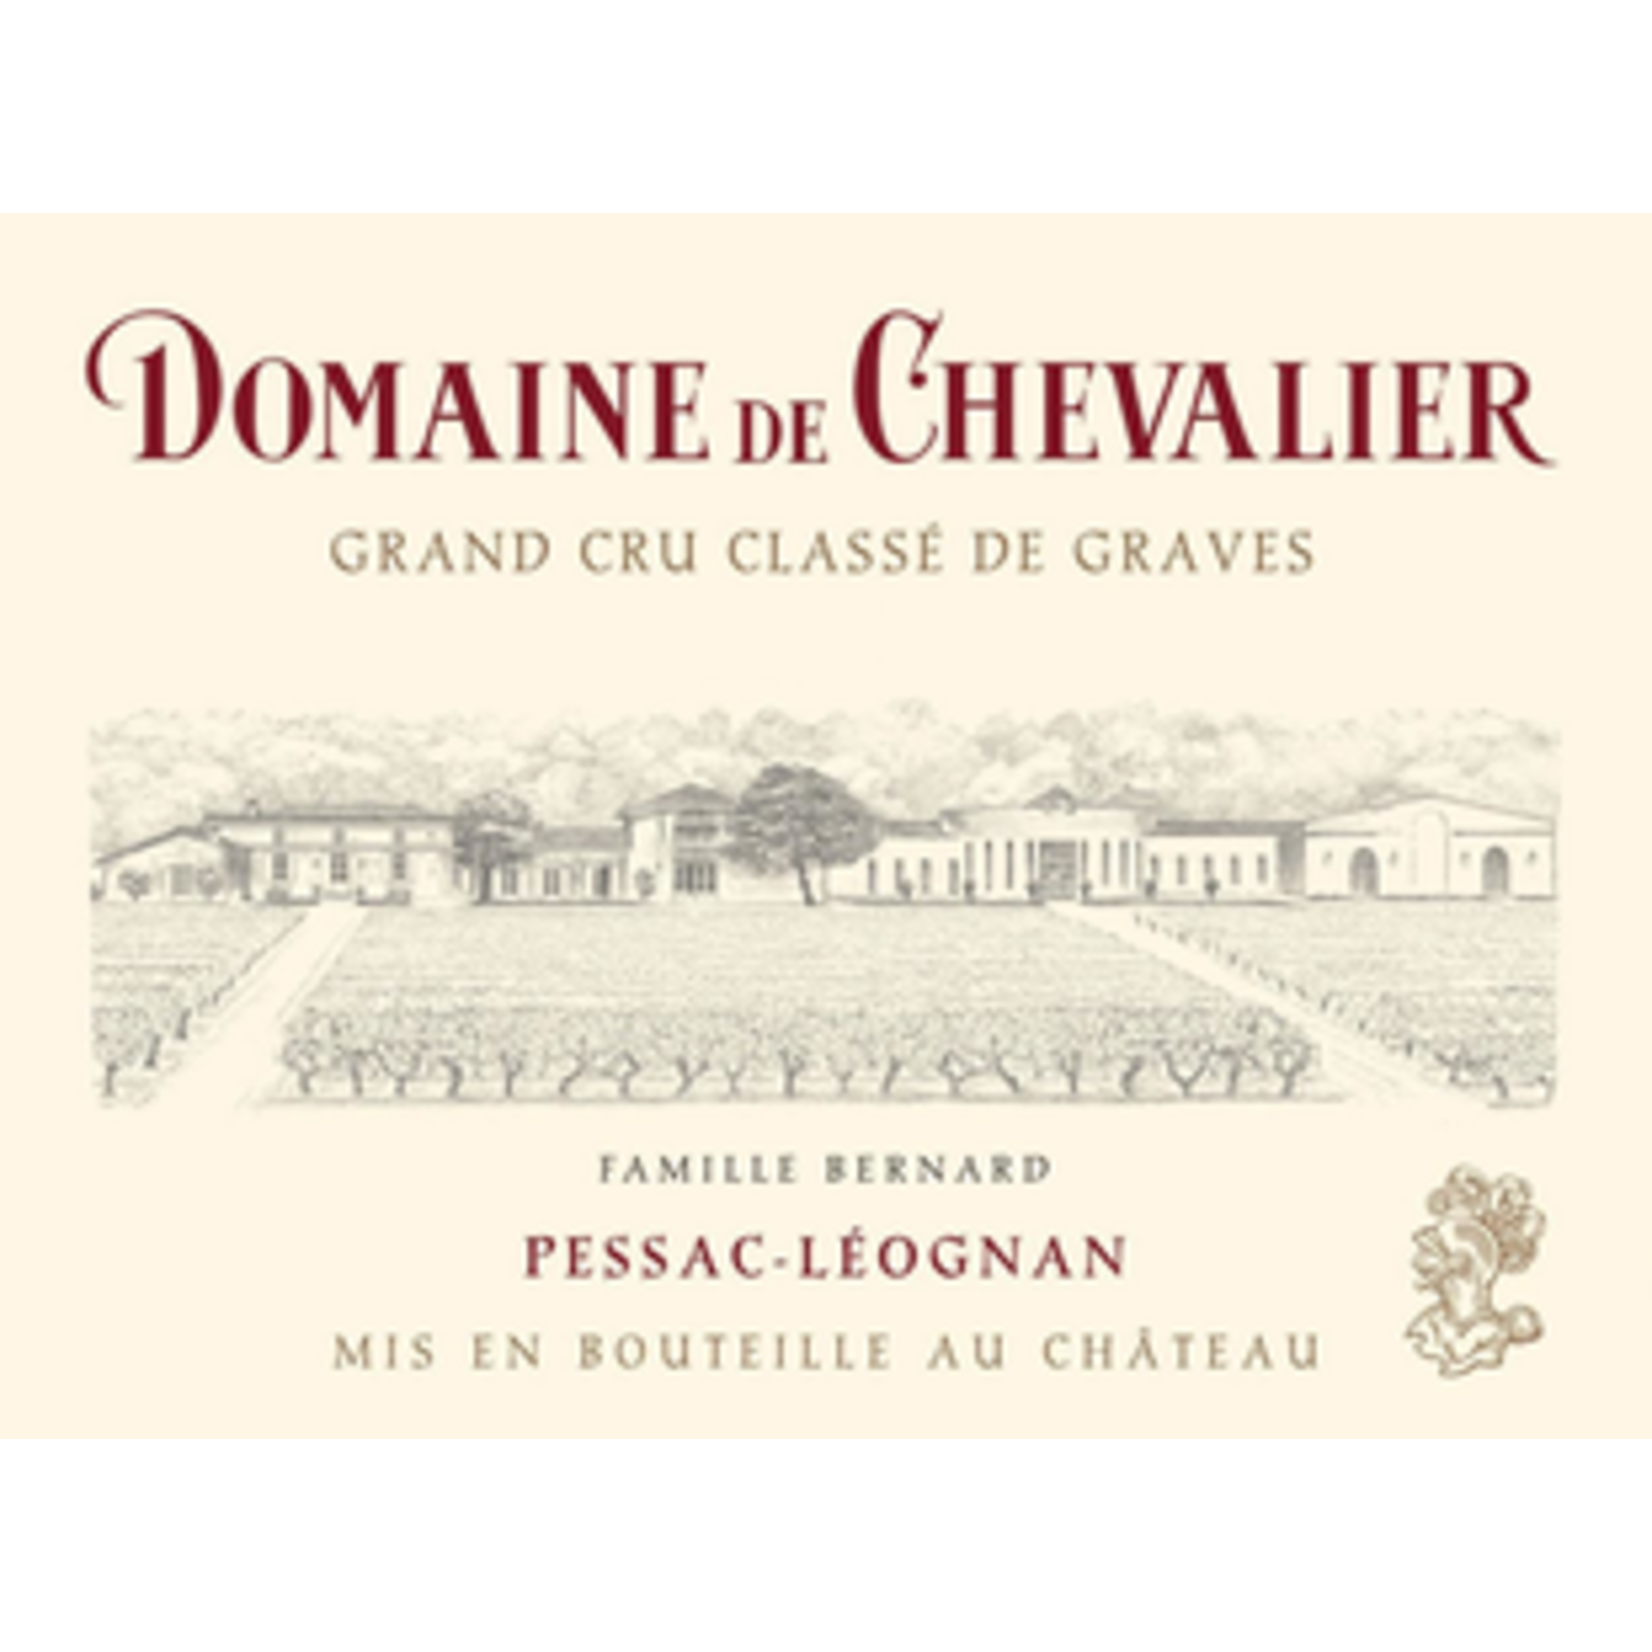 Wine Domaine De Chevalier Pessac-Leognan Grand Cru Classé De Graves 2018